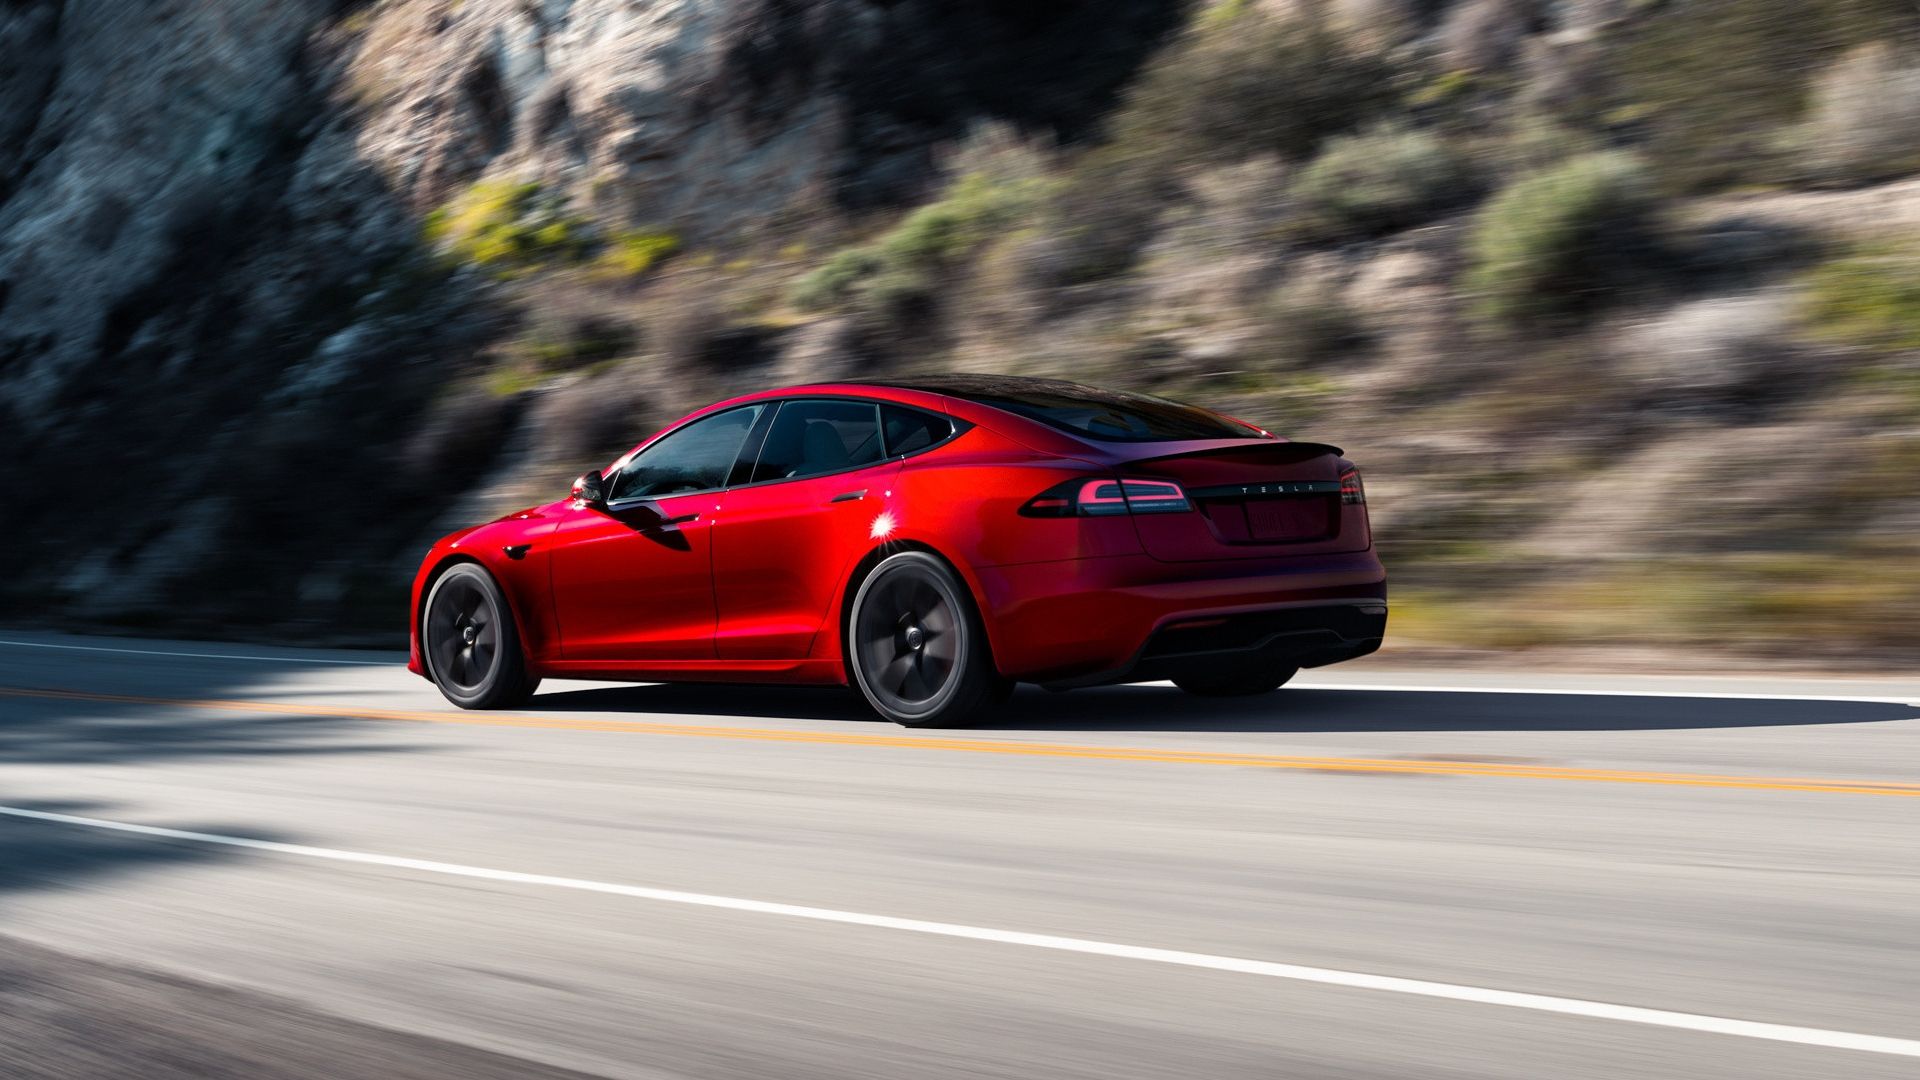 Red Tesla Model S rear